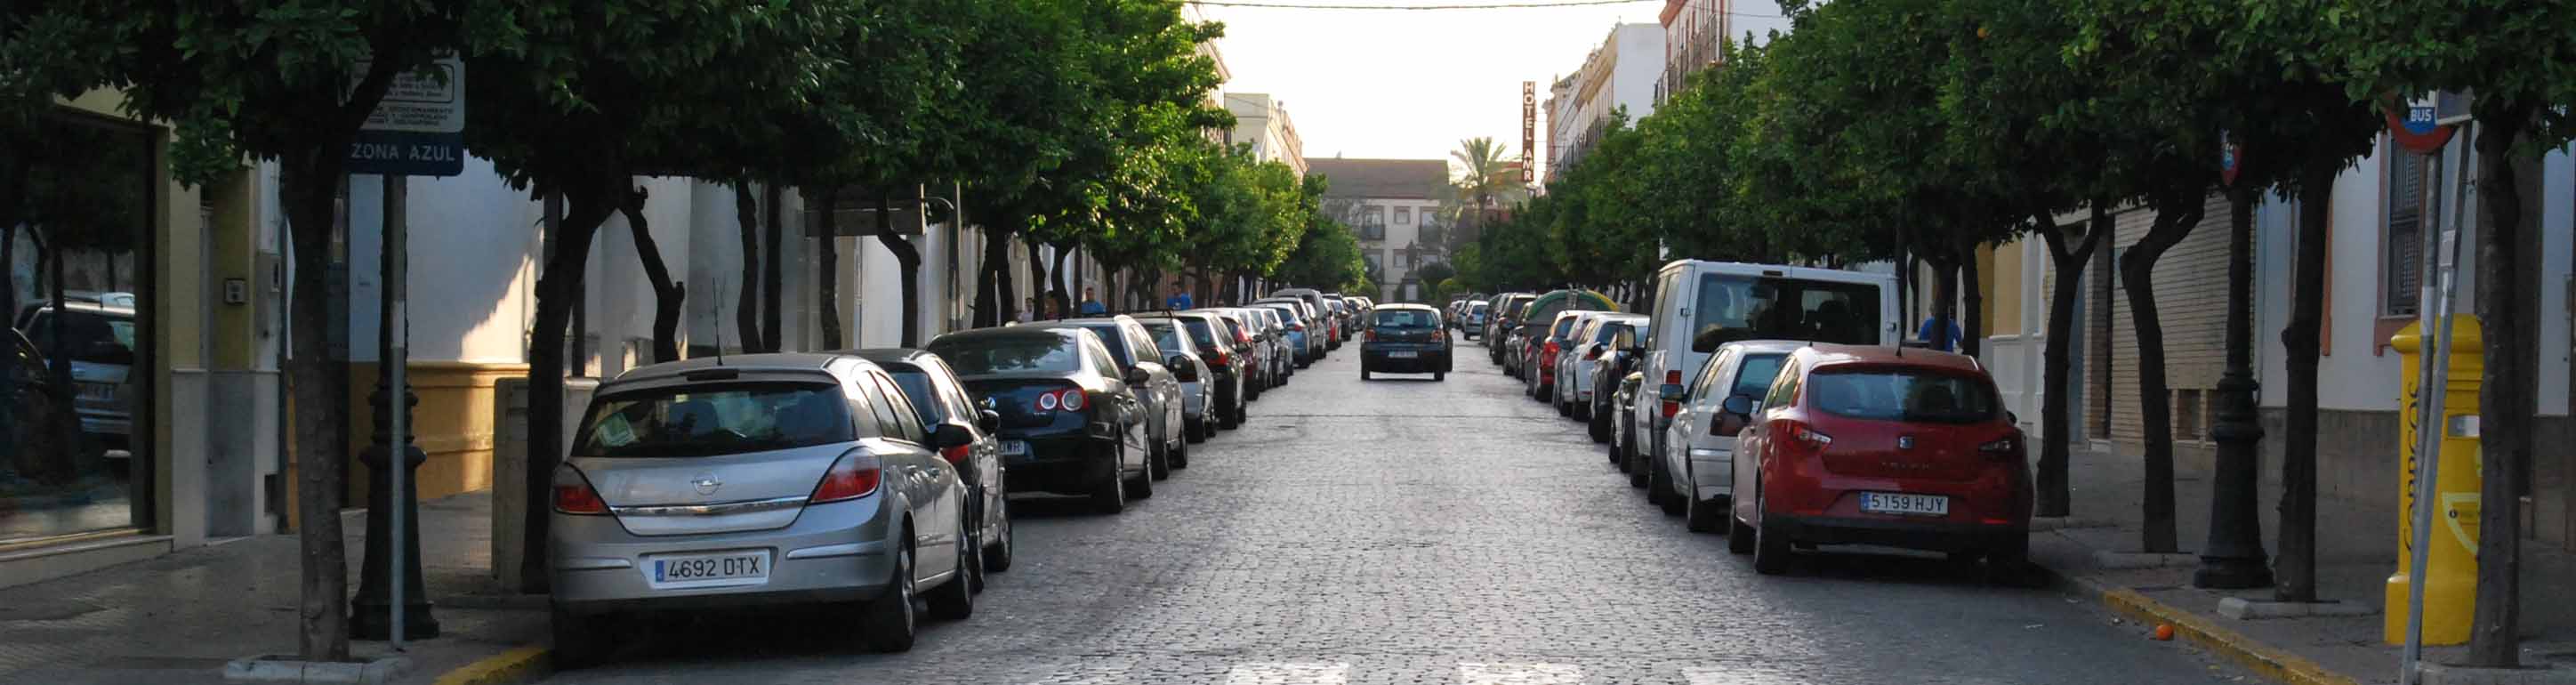 El centro histórico de Utrera padece muchos problemas de aparcamiento